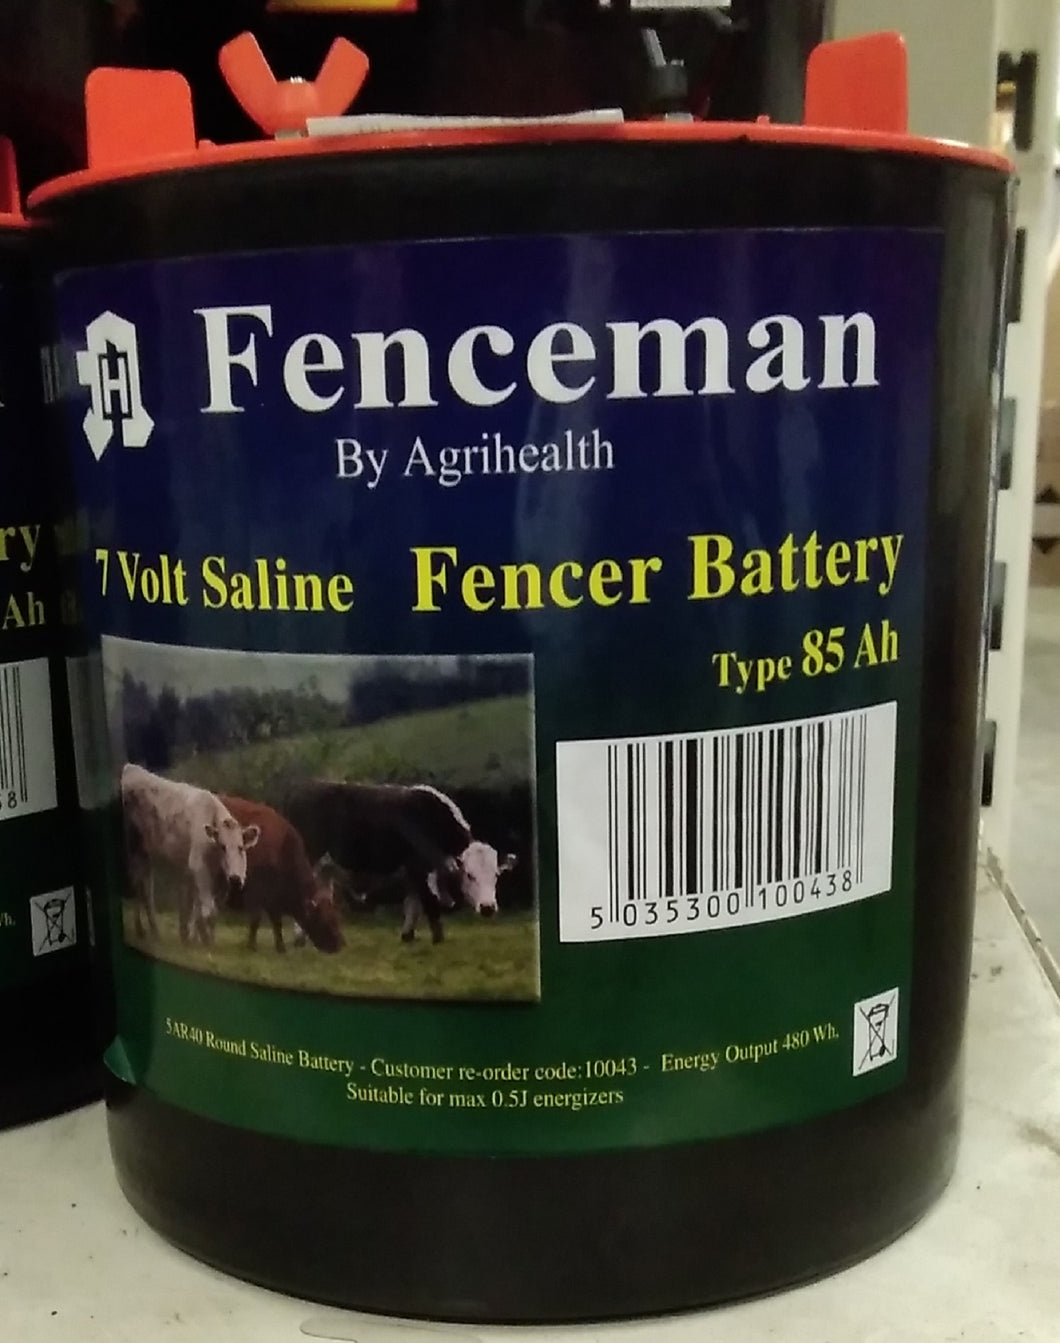 Fenceman Fencer Battery - 7V 85Ah